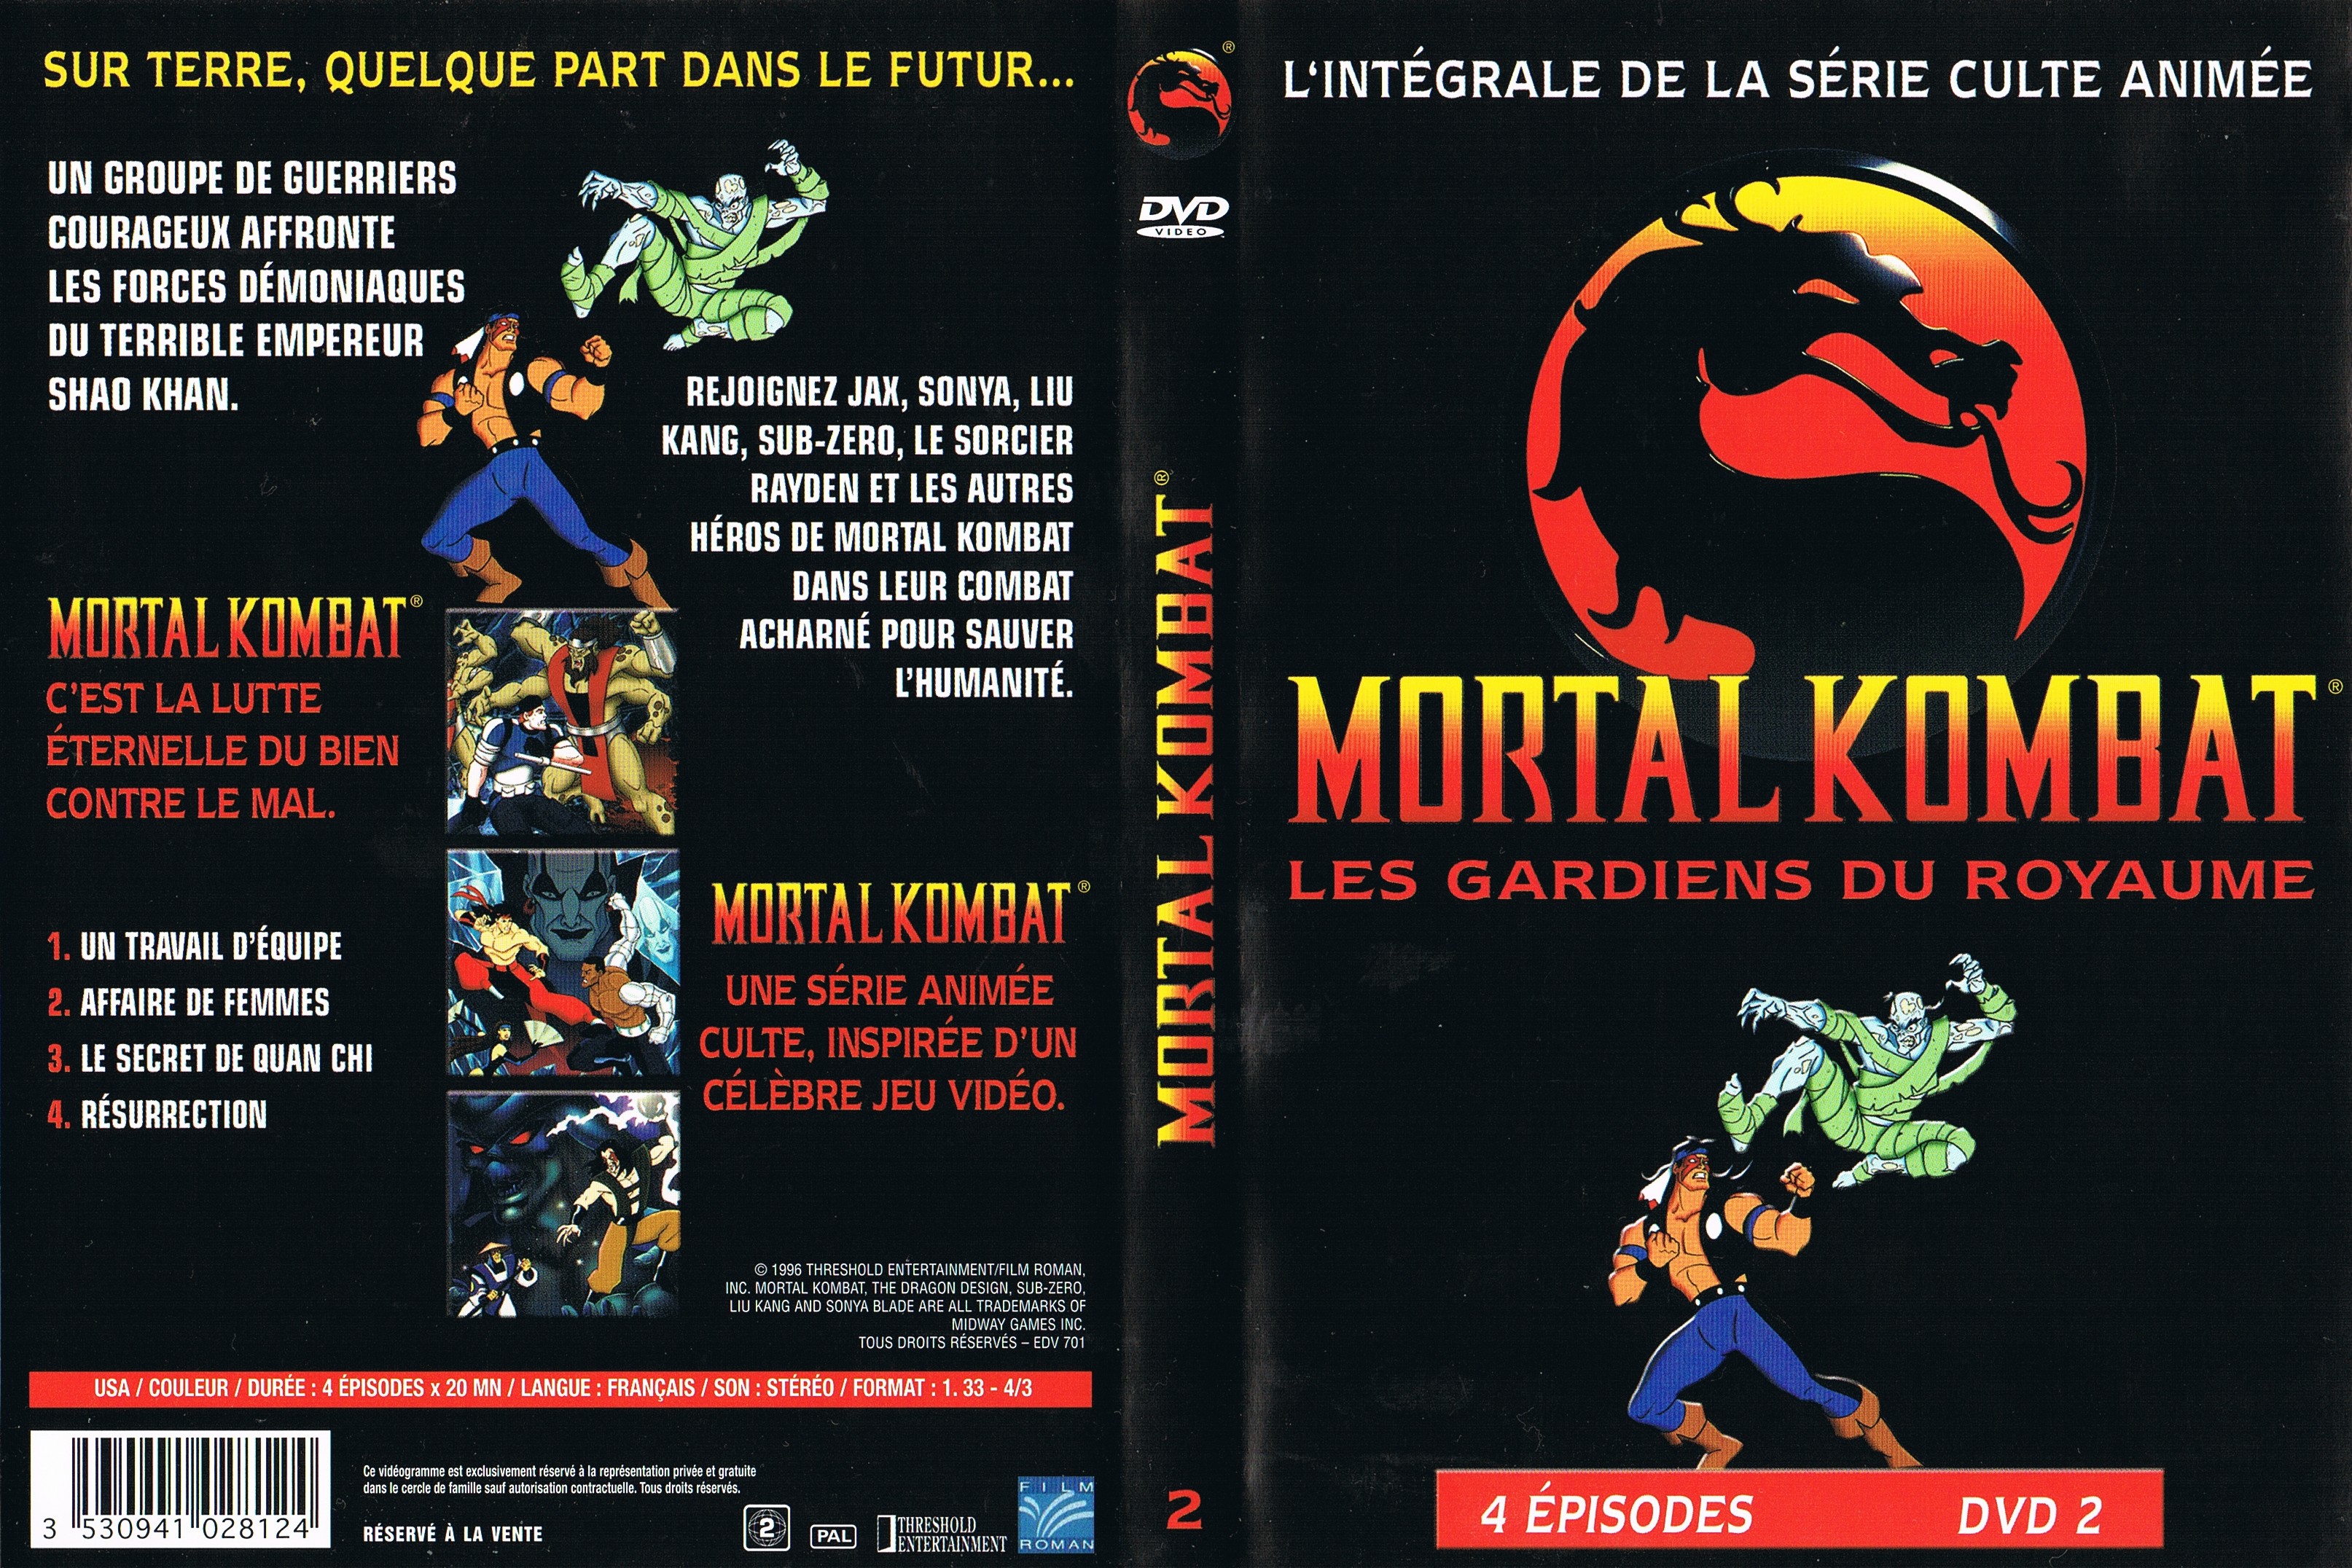 Jaquette DVD Mortal Kombat Les gardiens du royaume DVD 02